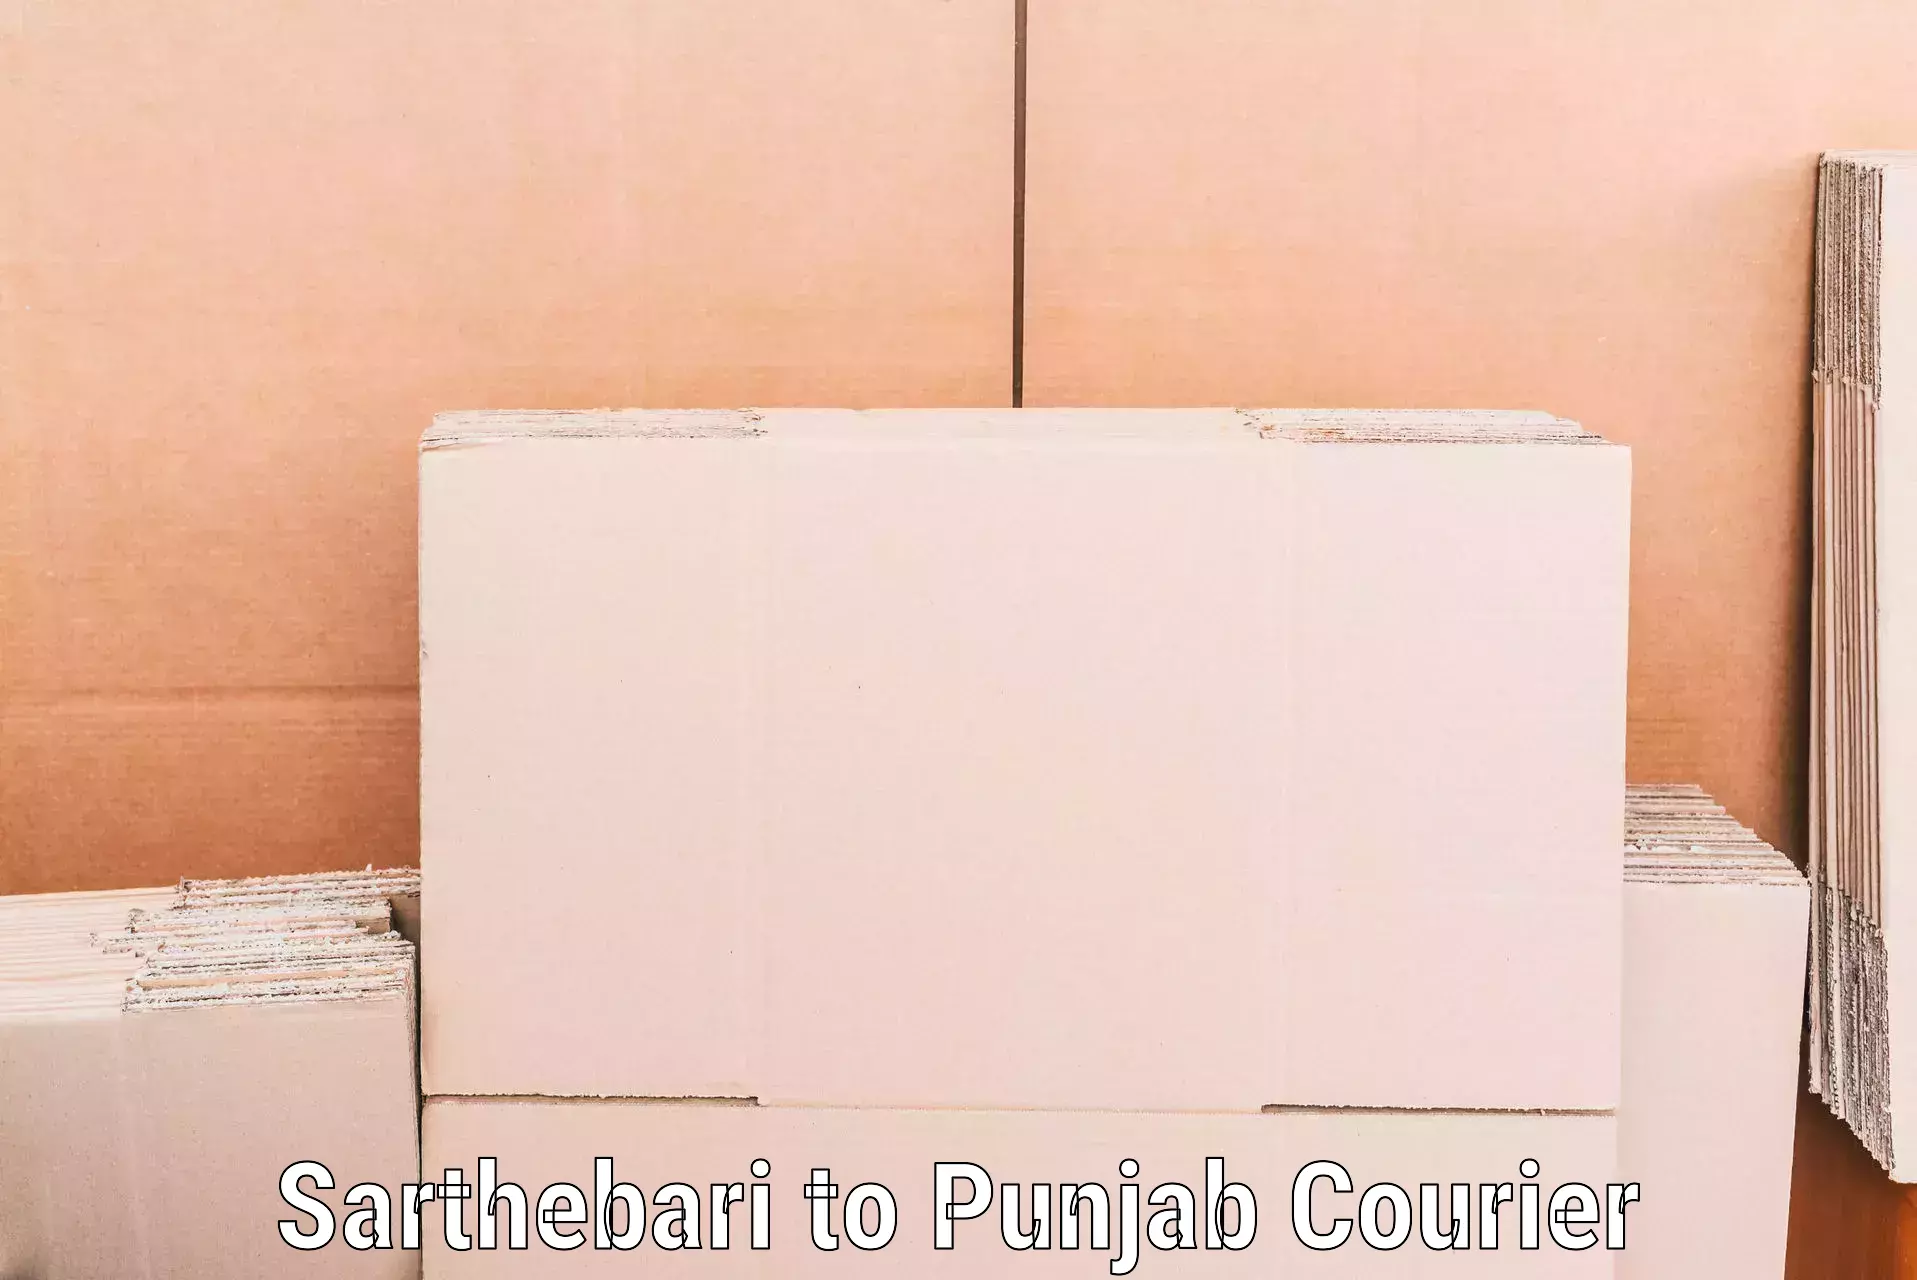 Furniture moving experts in Sarthebari to Punjab